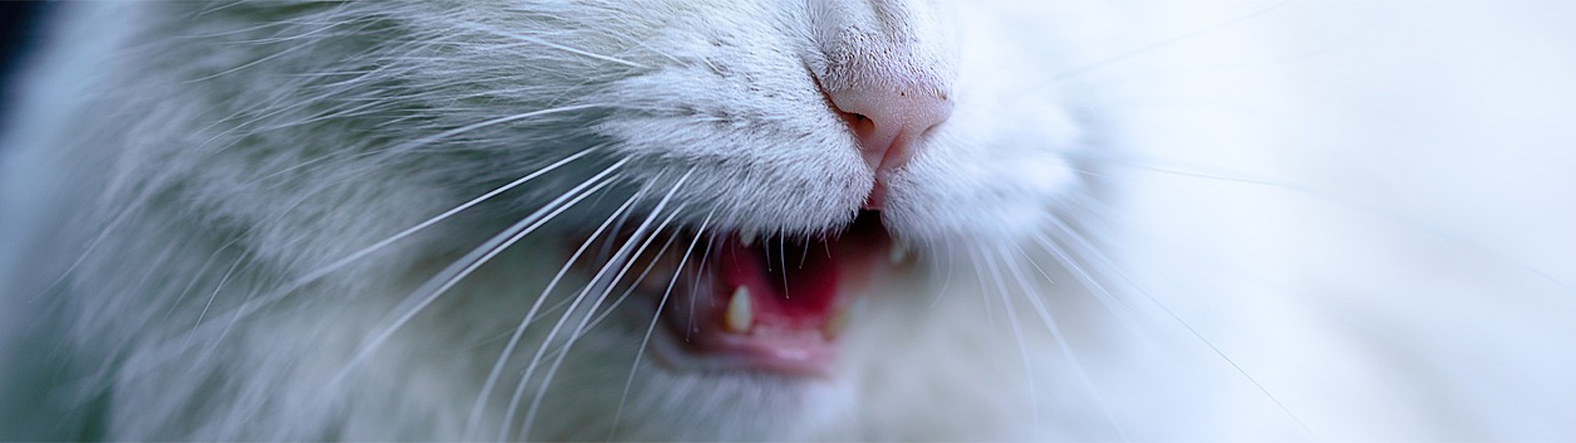 W jaki sposób objawia się zapalenie dziąseł u kotów?